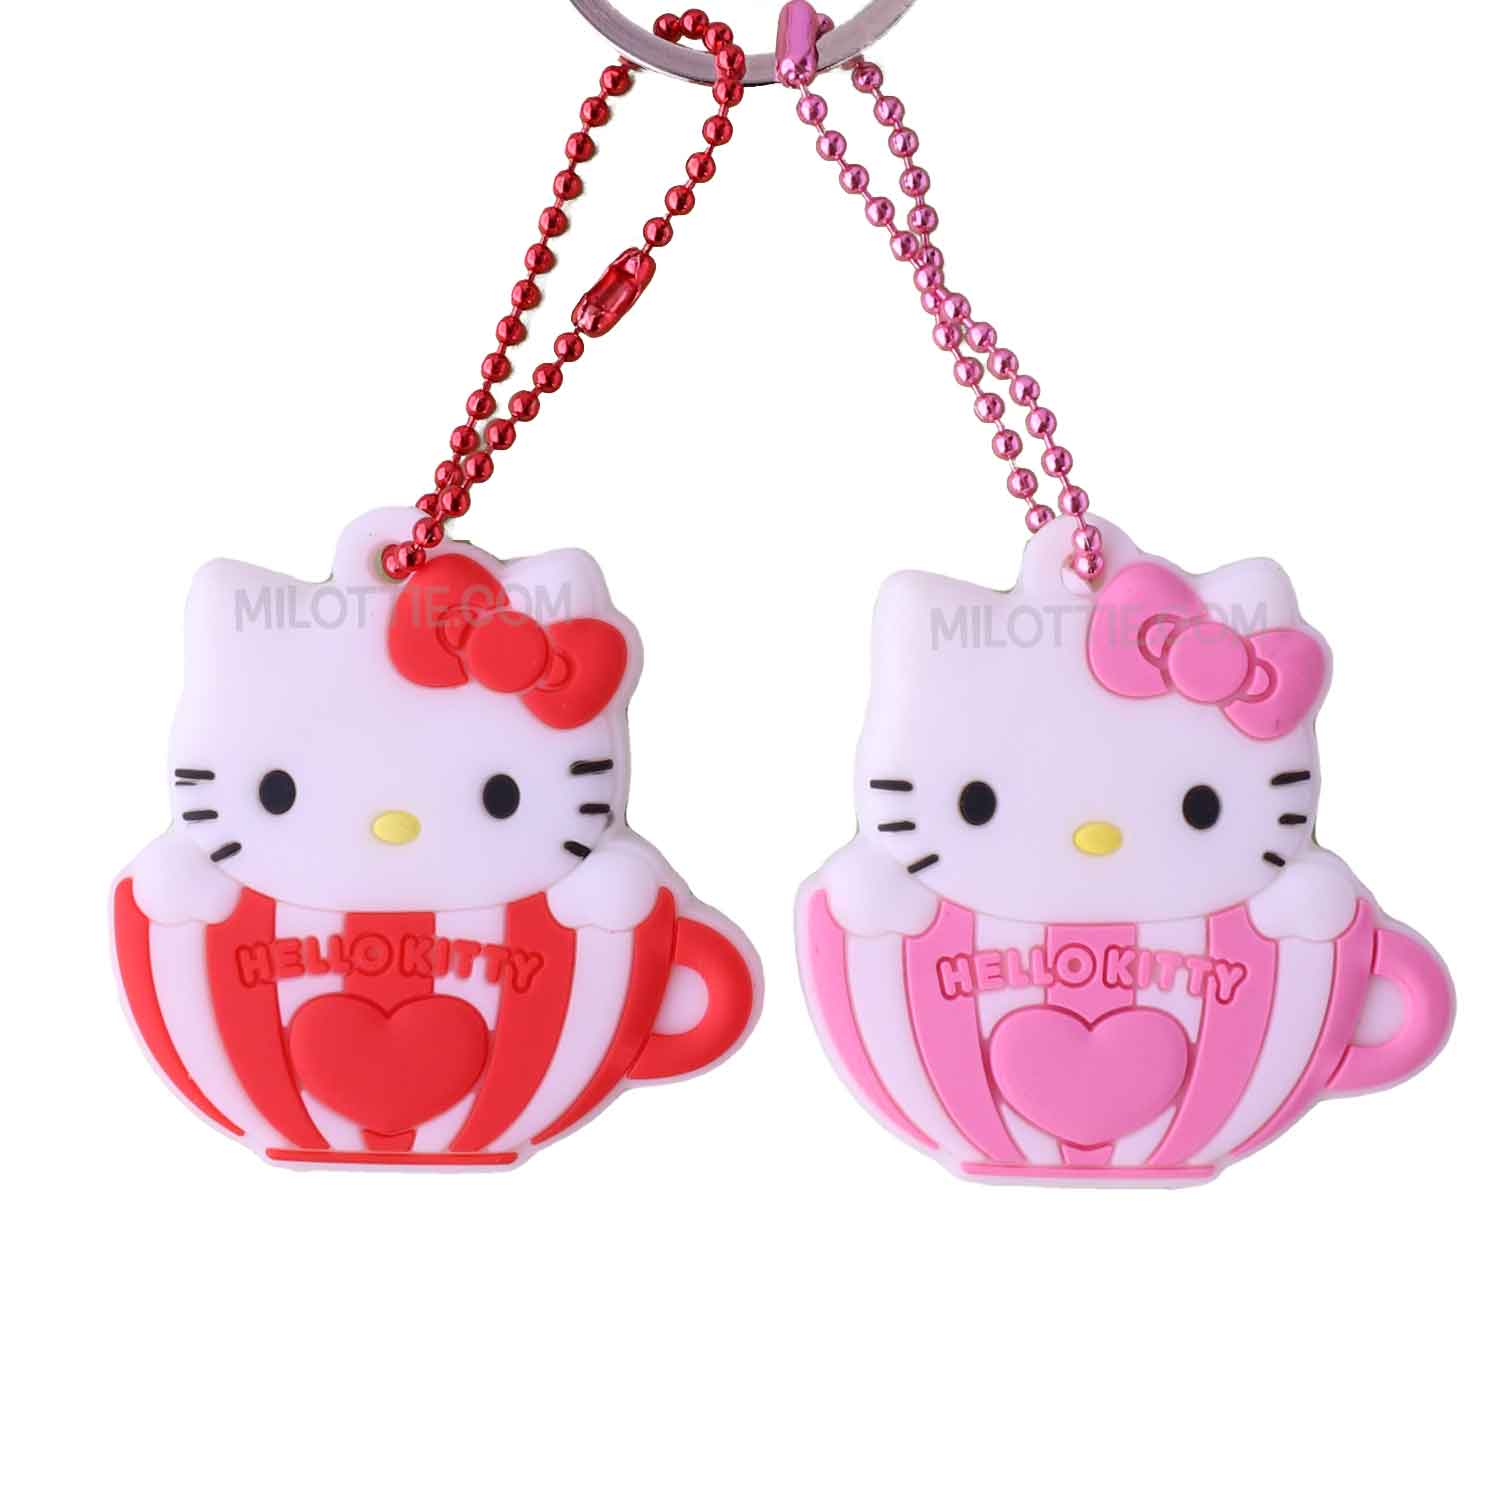 hello kitty in cups key covers - Milottie